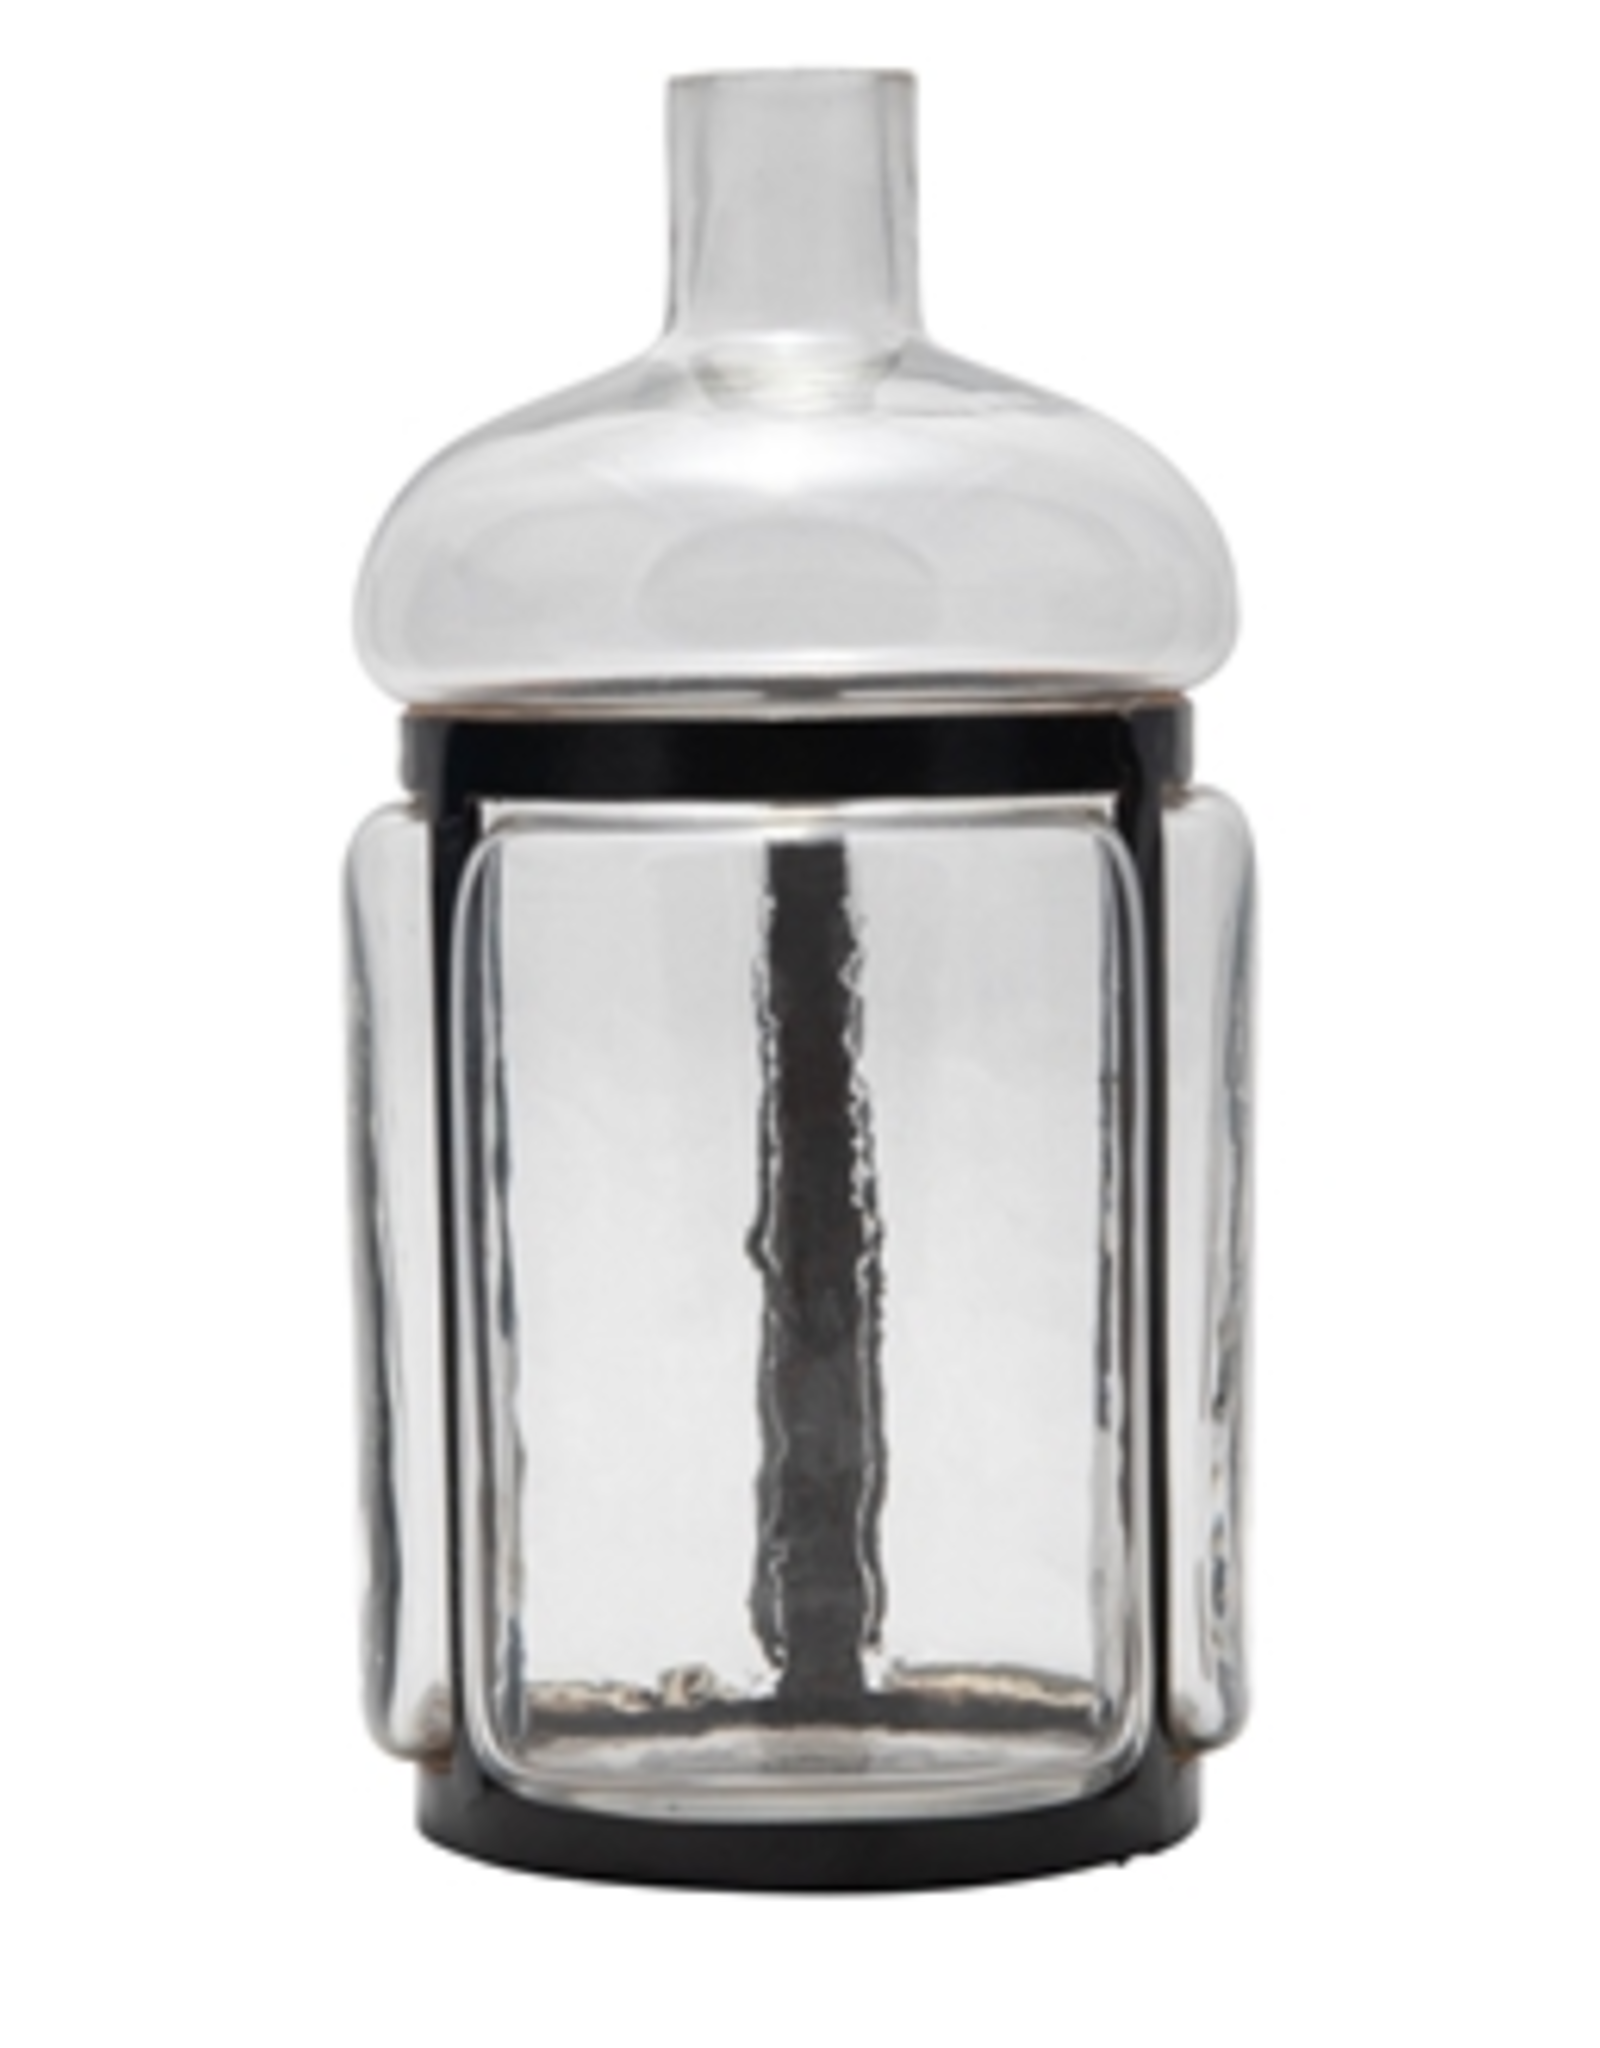 BIDK Small Glass & Iron Bottleneck Vase